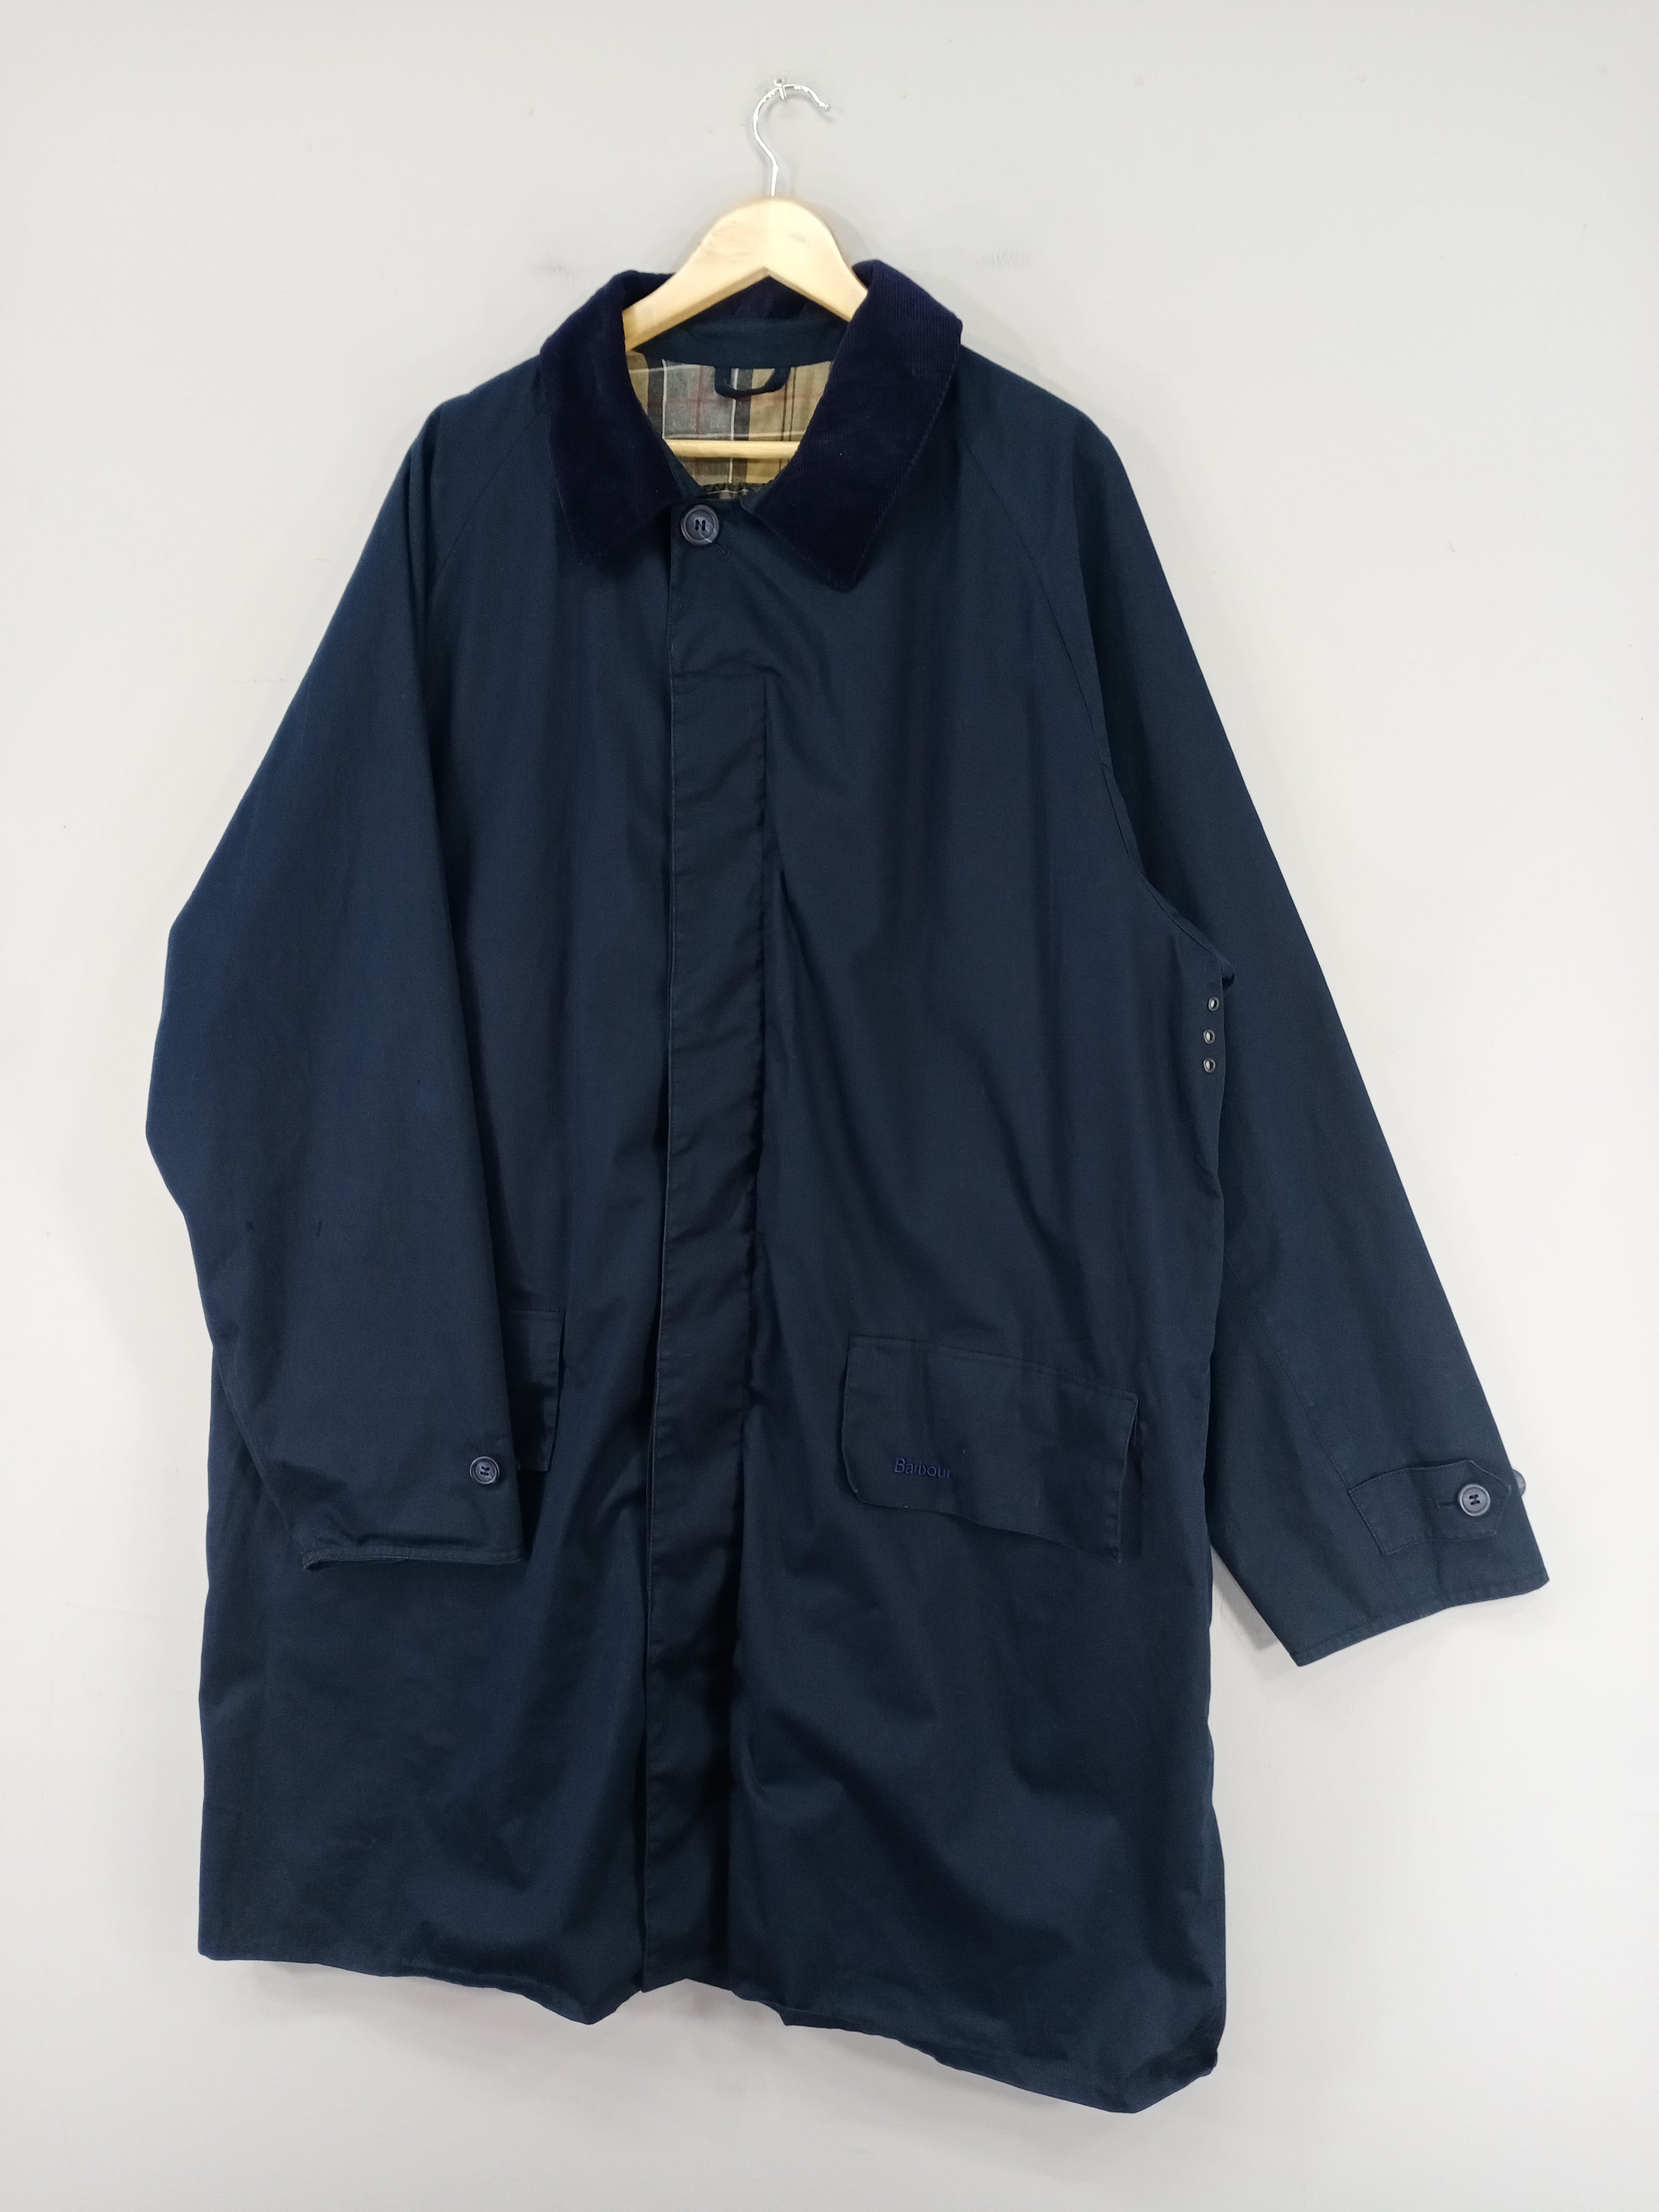 💥RARE💥Vintage Barbour Lightweight 3/4 Coat Jacket - 2